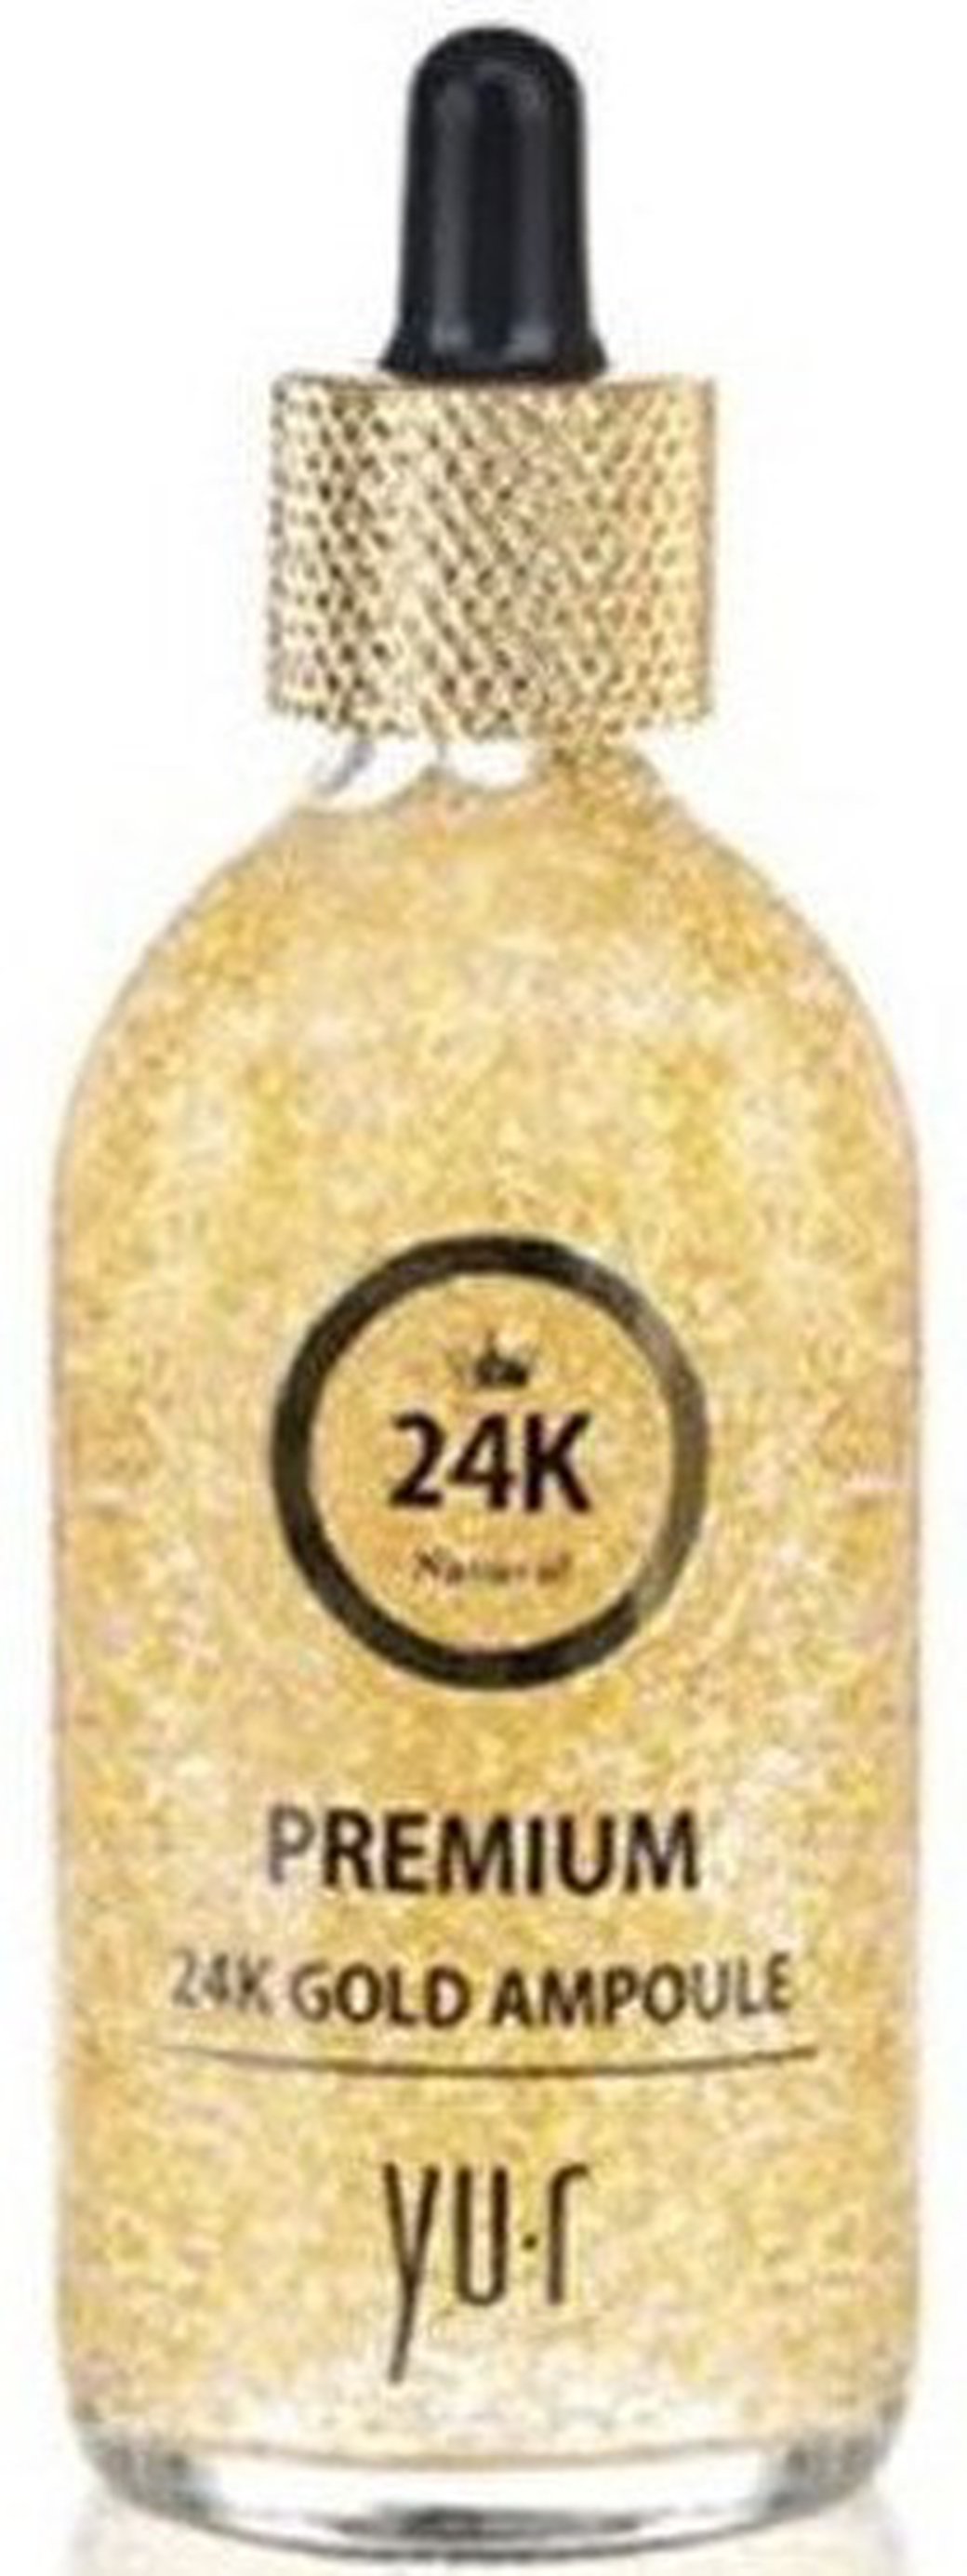 Сыворотка YU-R Premium 24K Gold Ampoule (с коллоидным золотом) 100 мл. фото